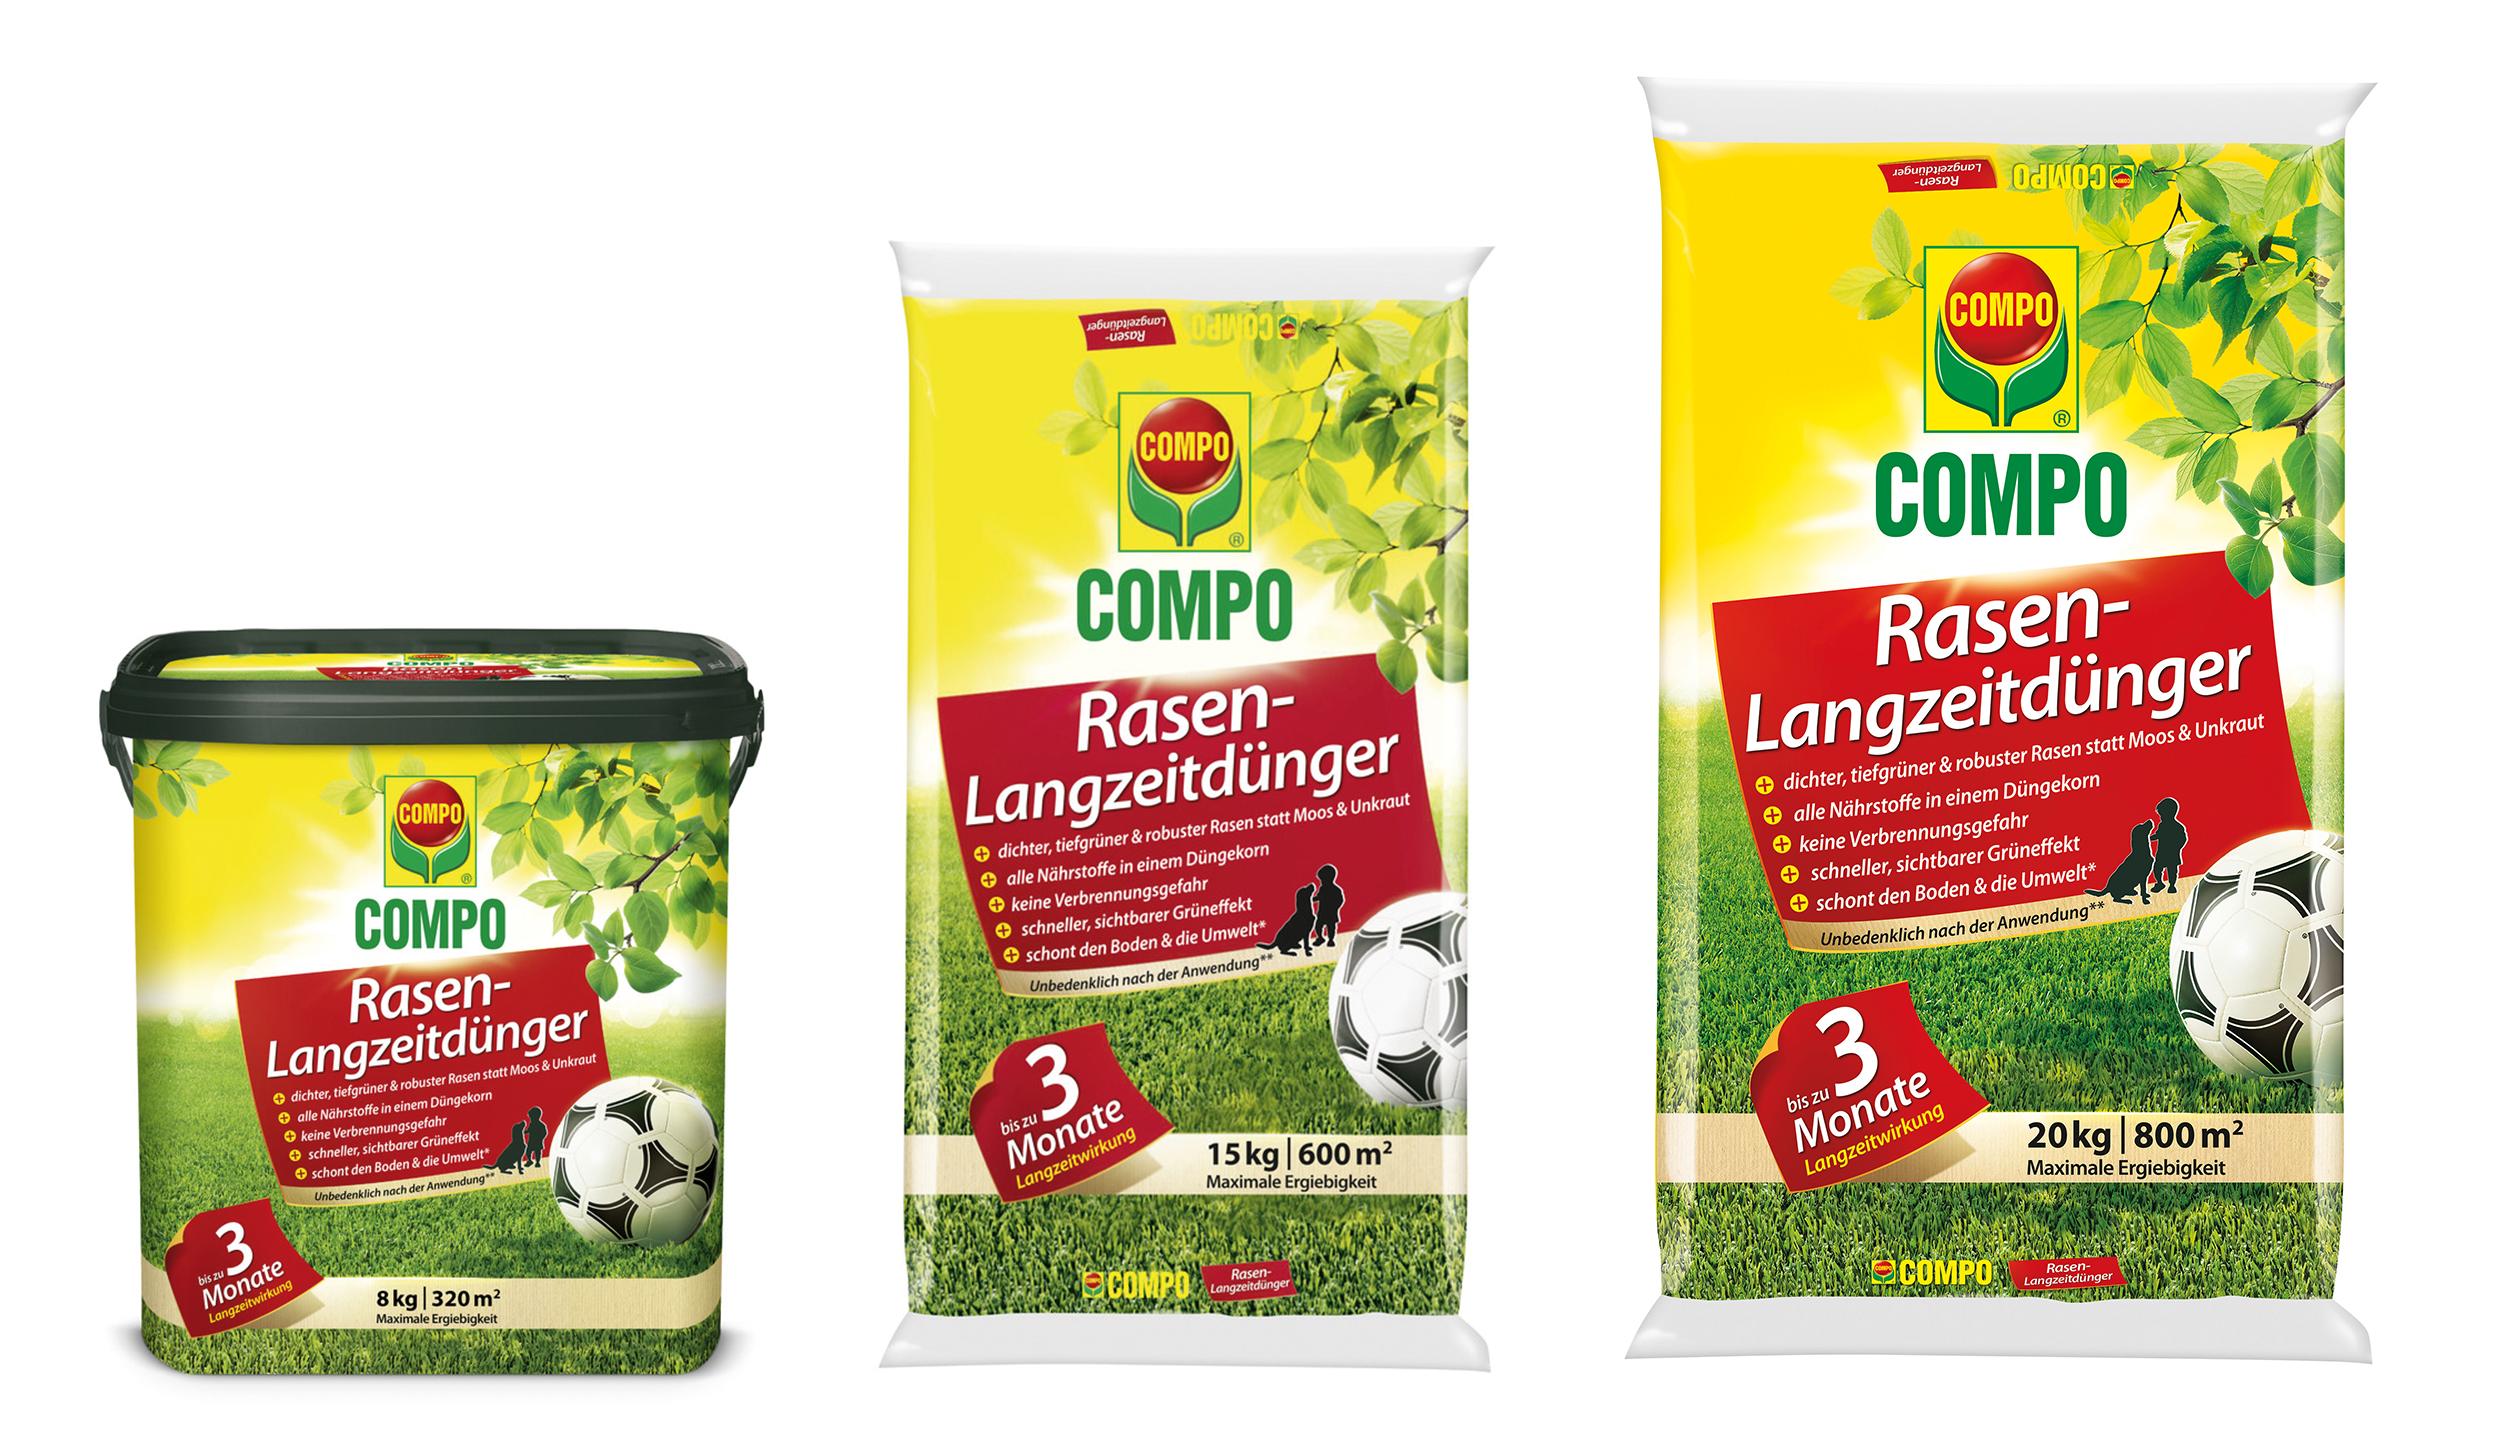 Compo Rasen-Langzeitdünger 8 kg für 320 m²